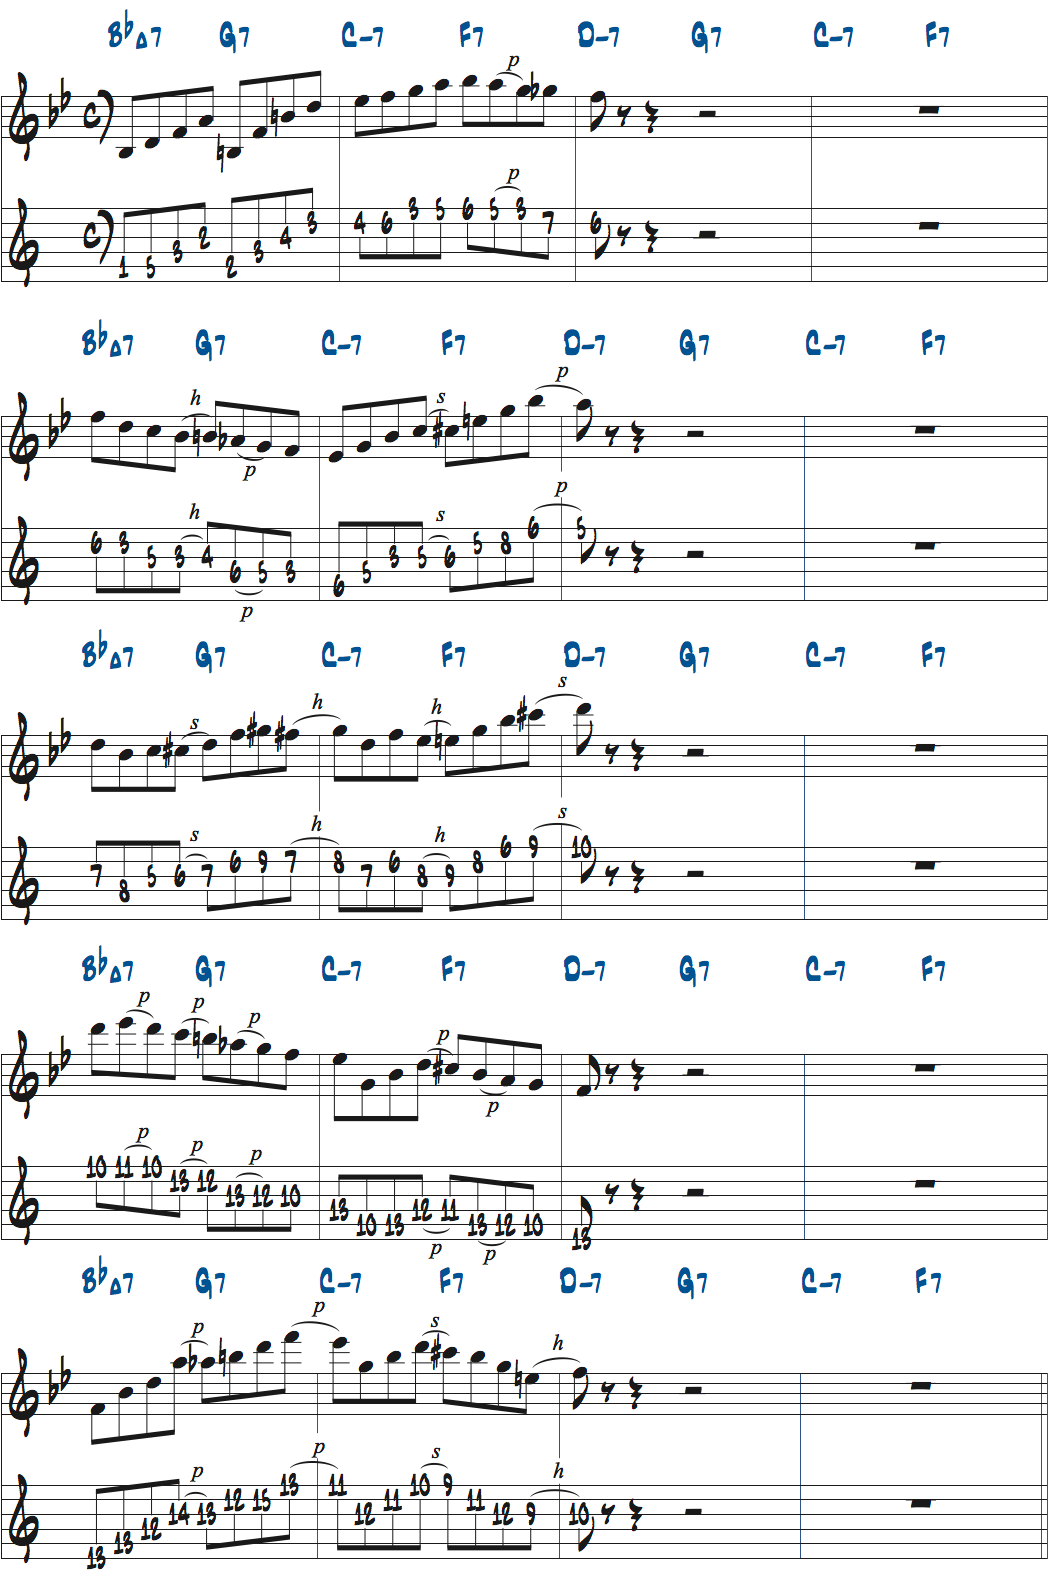 F7コード上でC#ディミニッシュスケールを使ったアドリブ例楽譜